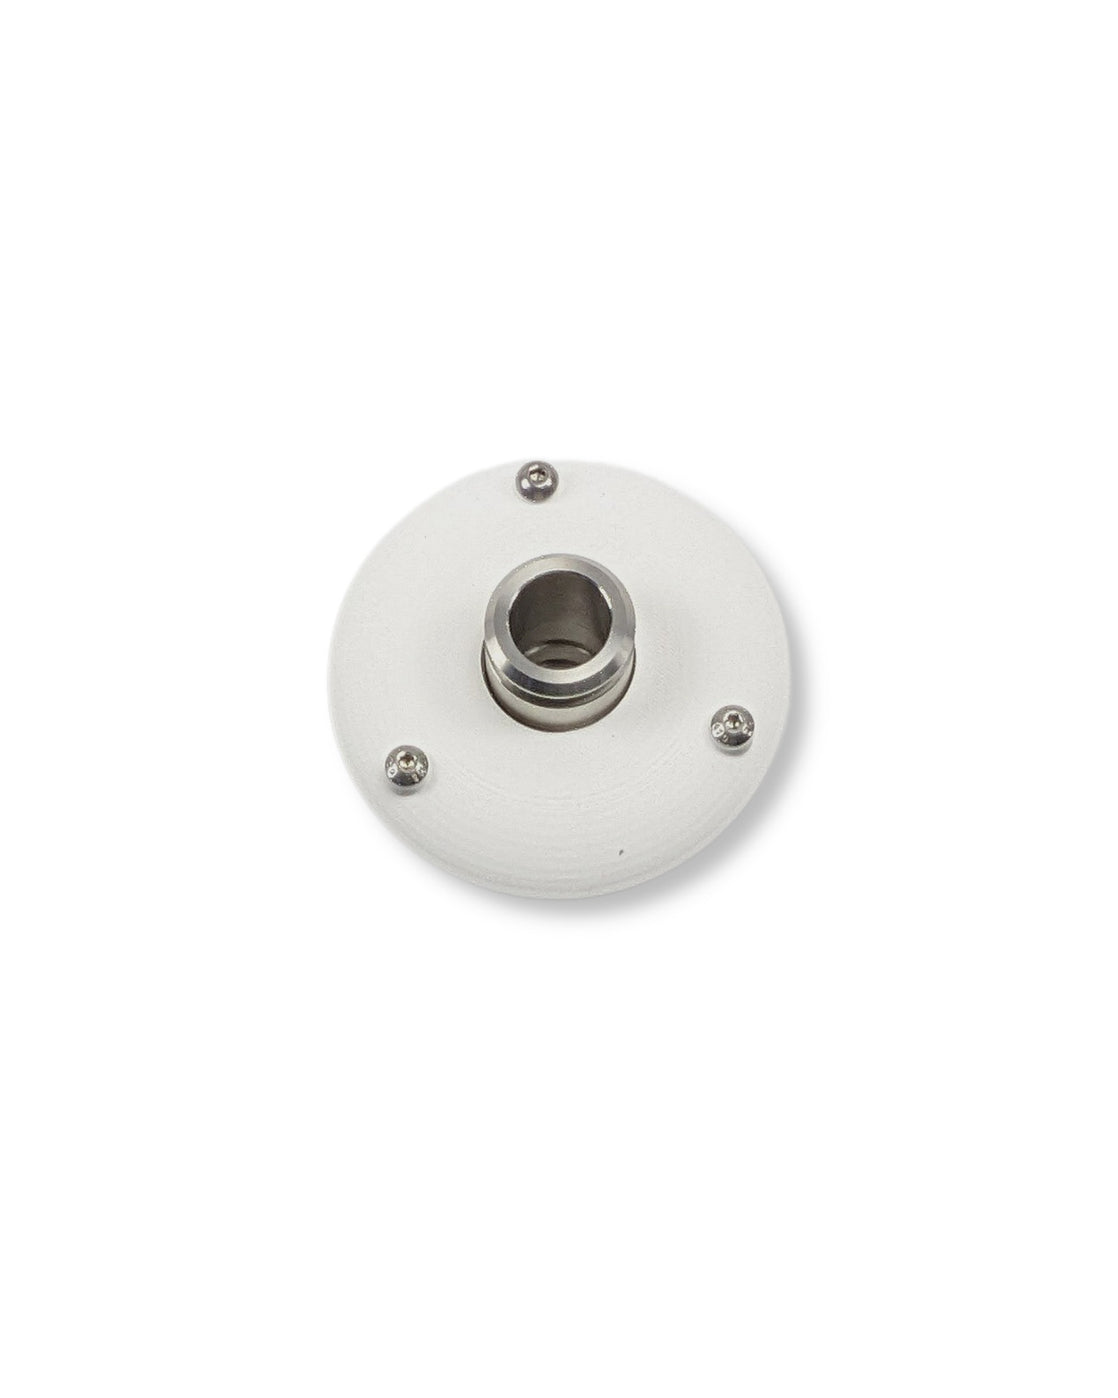 Ein weißer runder Knopf auf einer weißen Oberfläche mit dem UV Concept GmbH PURION IBC Universal 17W SPL BS Tank-Set für verbesserte Trinkwasserqualität und Schutz vor Verkeimungen.